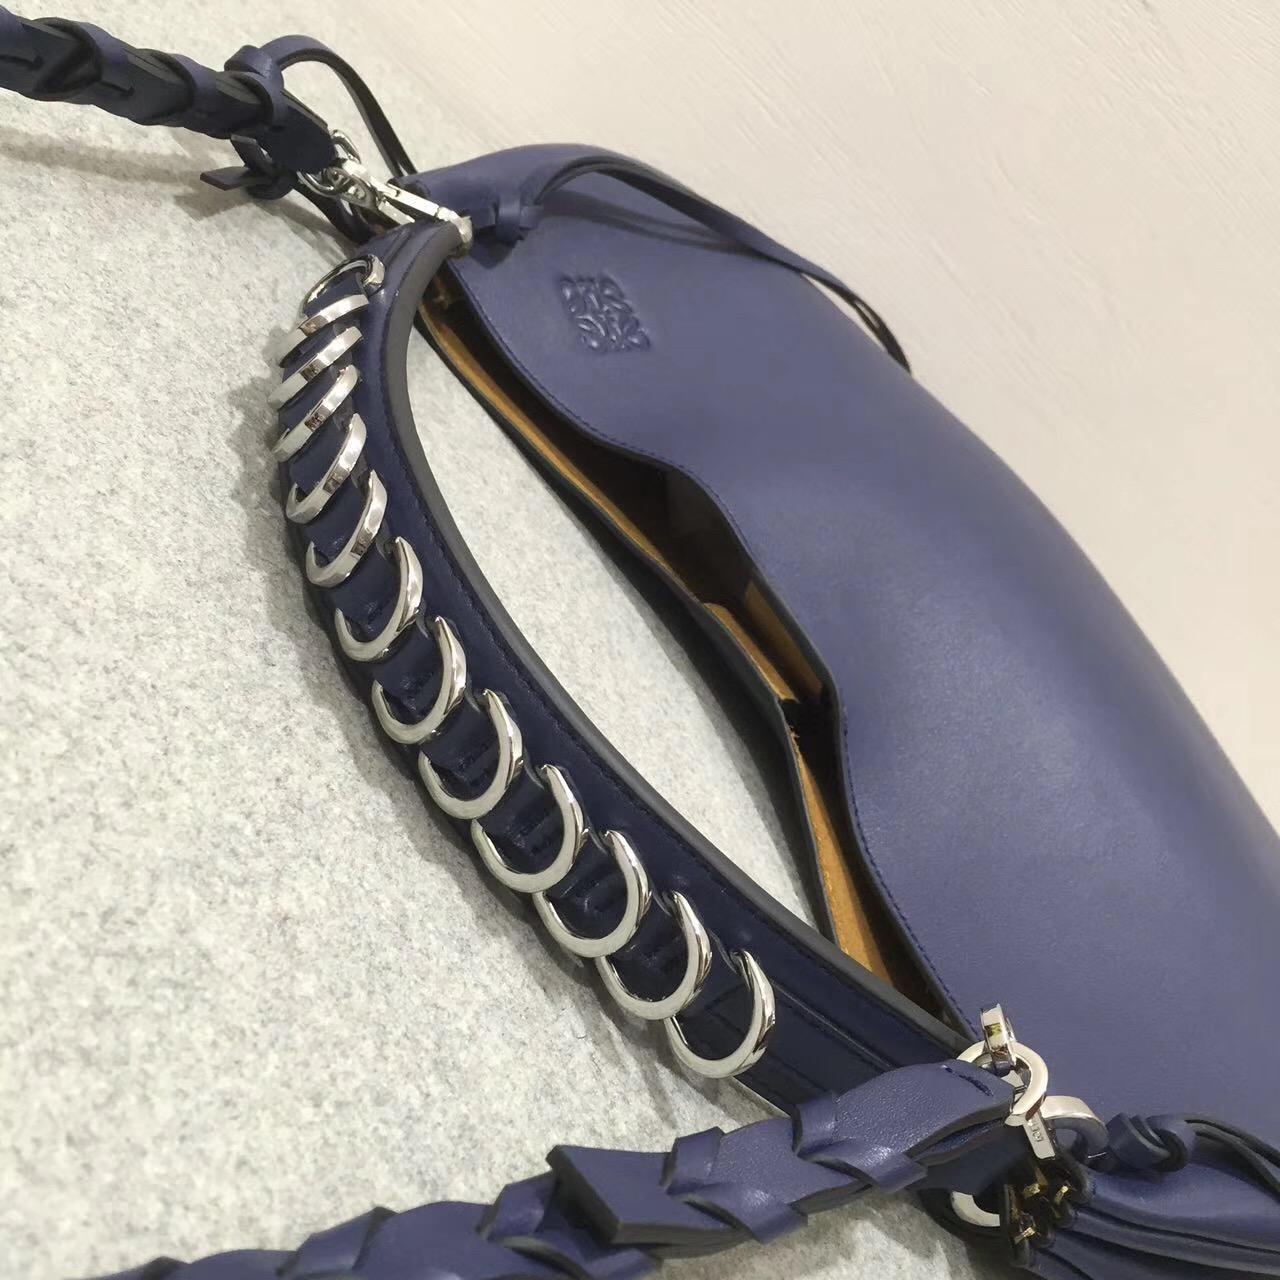 羅意威 Loewe Fortune hobo bag系列限量版半月包海军蓝色 細紋小牛皮 內襯鹿皮